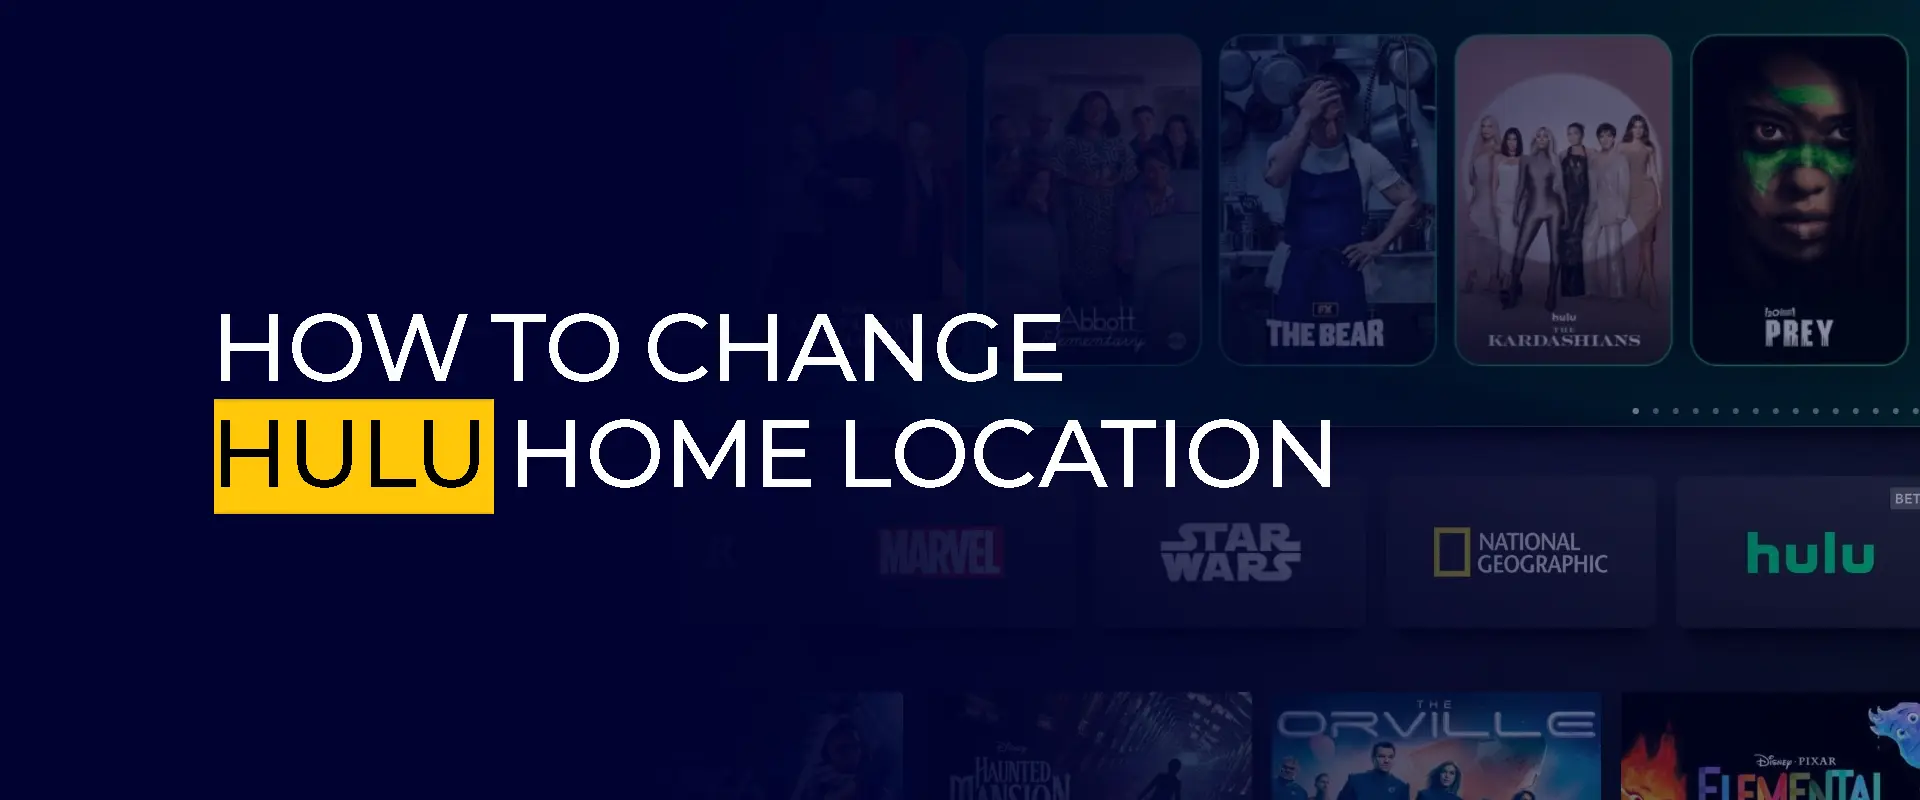 Como alterar a localização inicial do Hulu